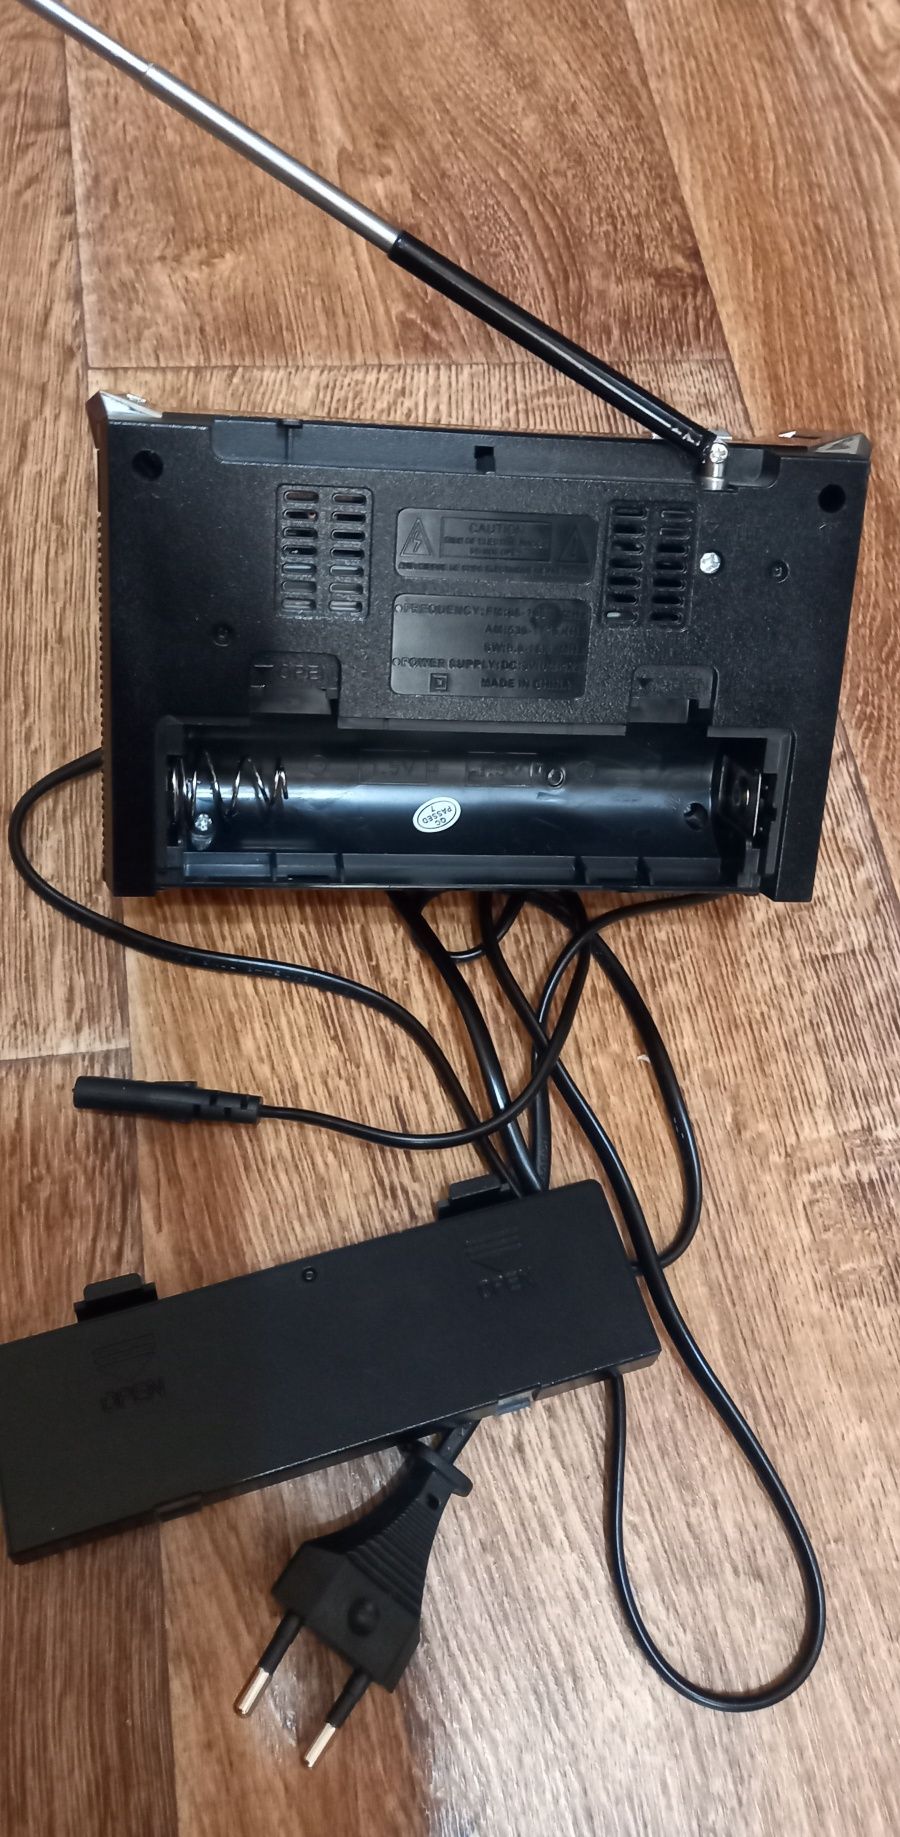 Радиоприёмник с USB флешками + фонарь